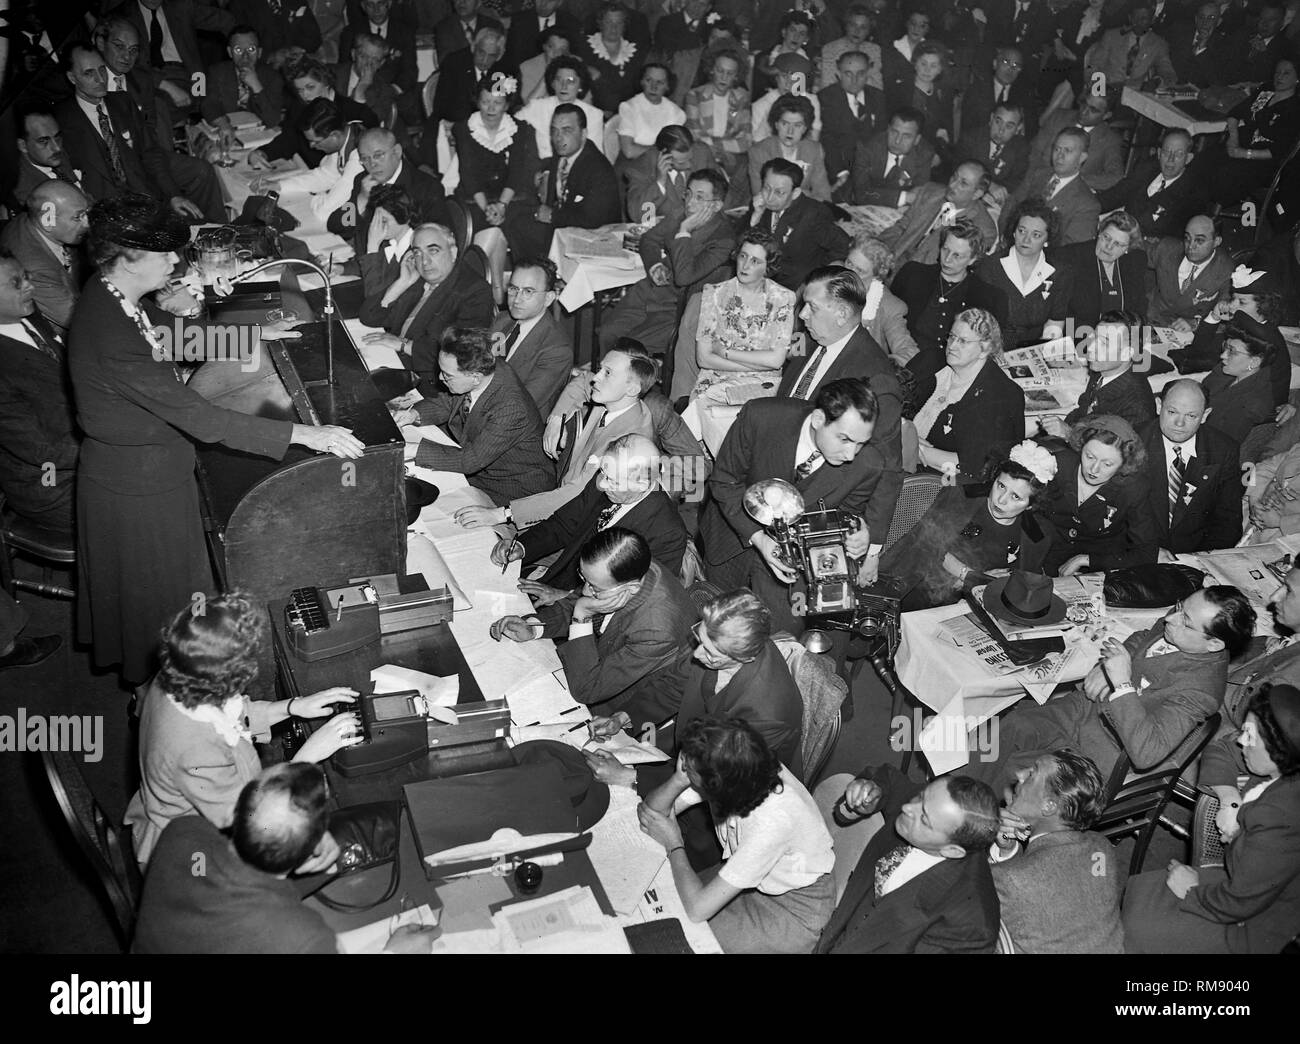 La première dame Eleanor Roosevelt parle devant une foule à Chicago, ca. 1944. Banque D'Images